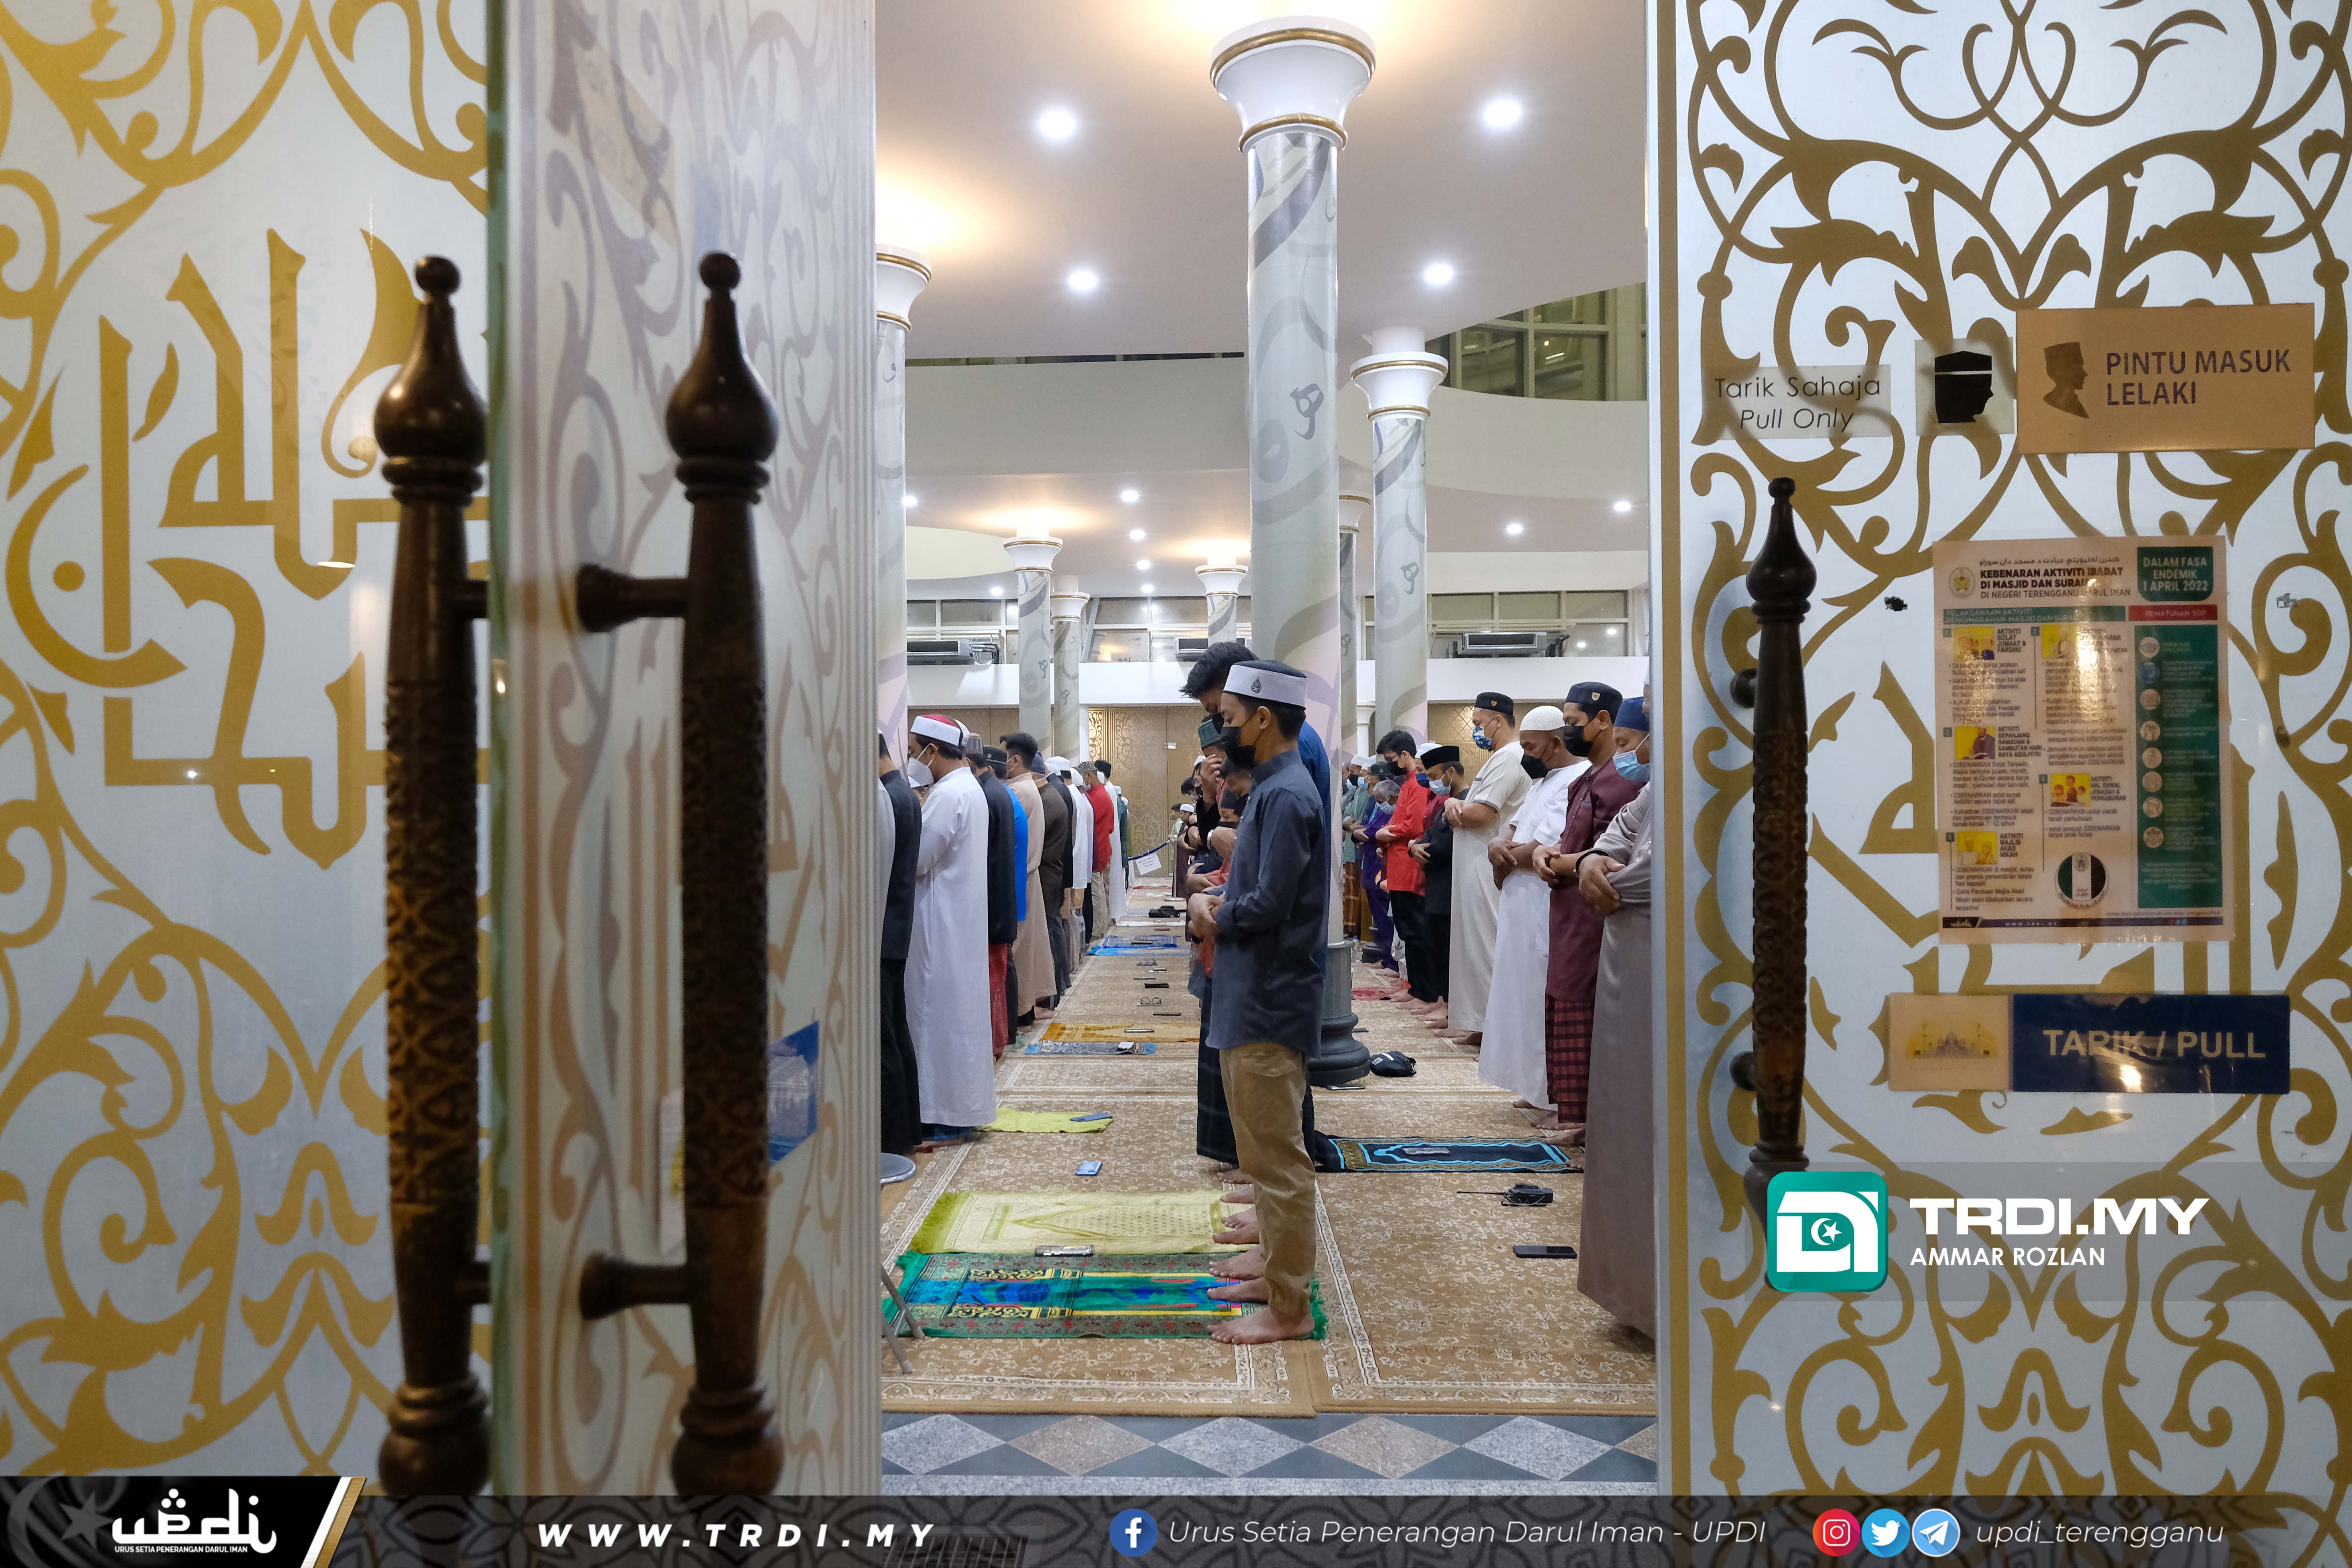 Keadaan terkini Masjid Kristal, Taman Tamadun Islam (TTI) Kuala Terengganu yang mula dibuka semula sejak 1 Ramadan lalu, Alhamdulillah.  Orang ramai dijemput untuk mengimarahkan masjid ini. Semoga dengan suasana baru, Ramadan kita lebih bermakna.